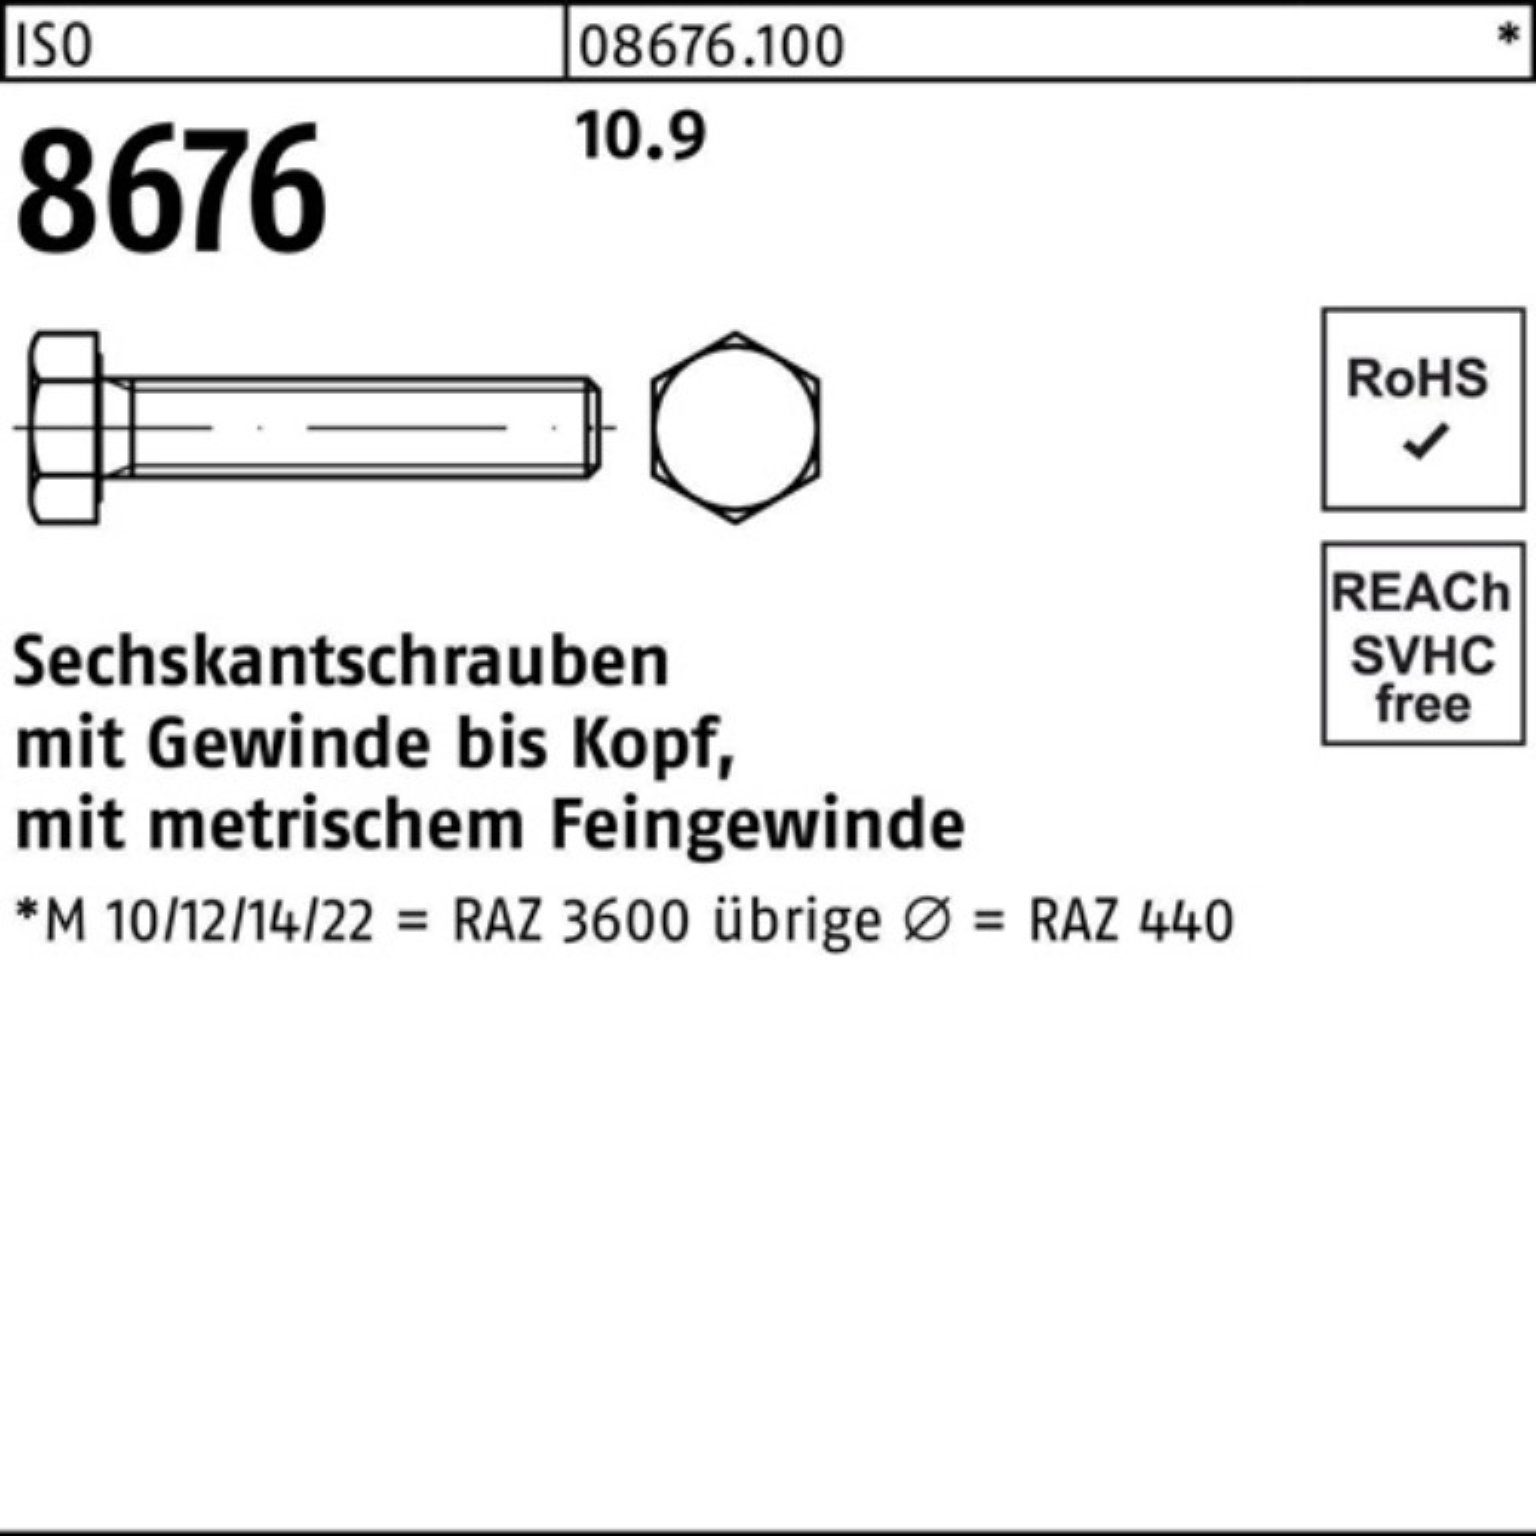 Reyher Sechskantschraube M14x1,5x140 8676 10.9 IS 100er Stück ISO 50 VG Sechskantschraube Pack